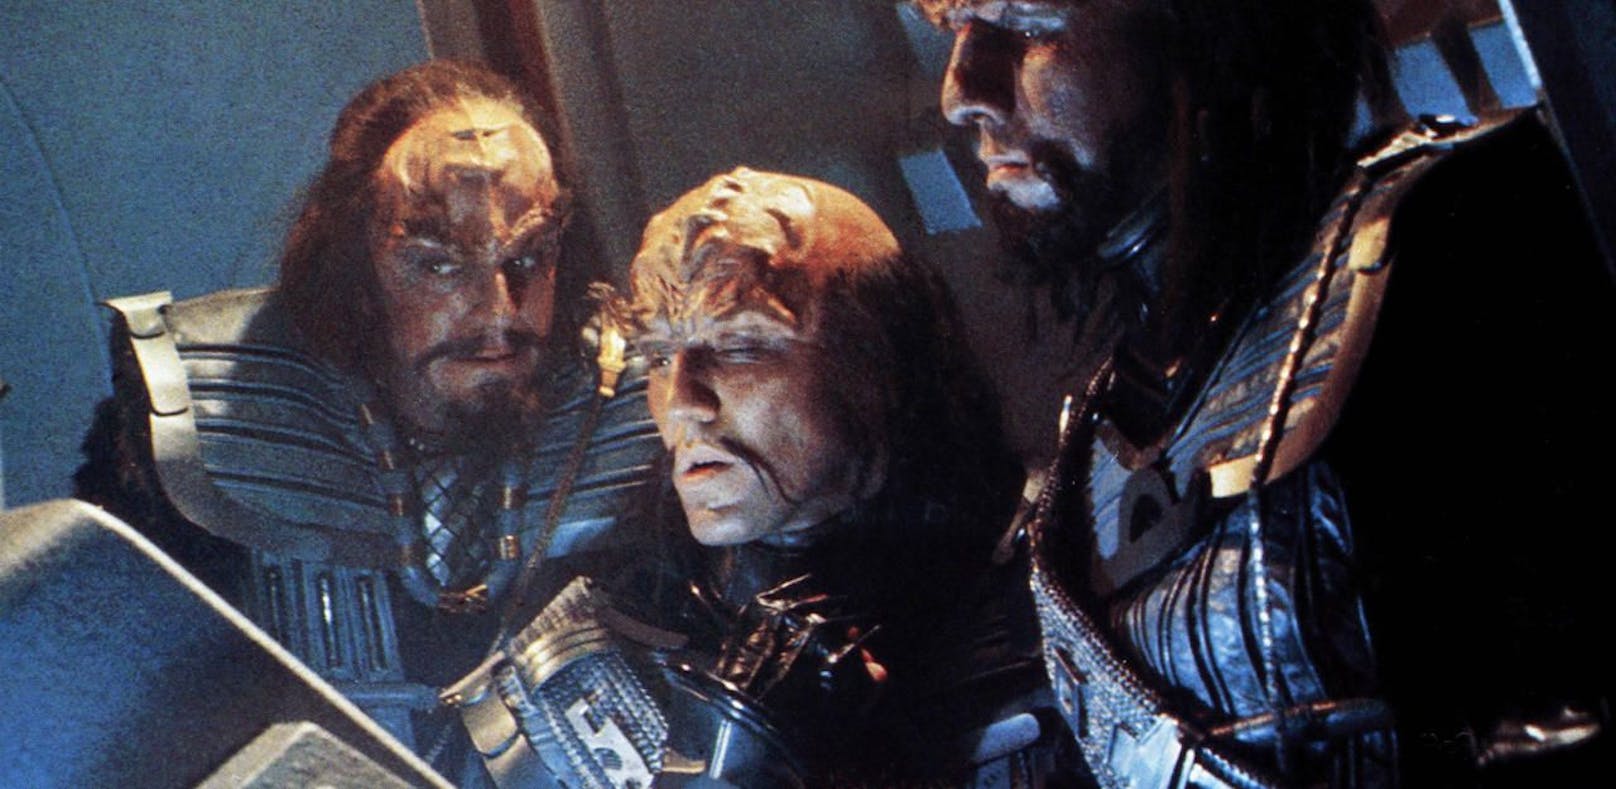 So klingt "Der kleine Prinz" auf Klingonisch